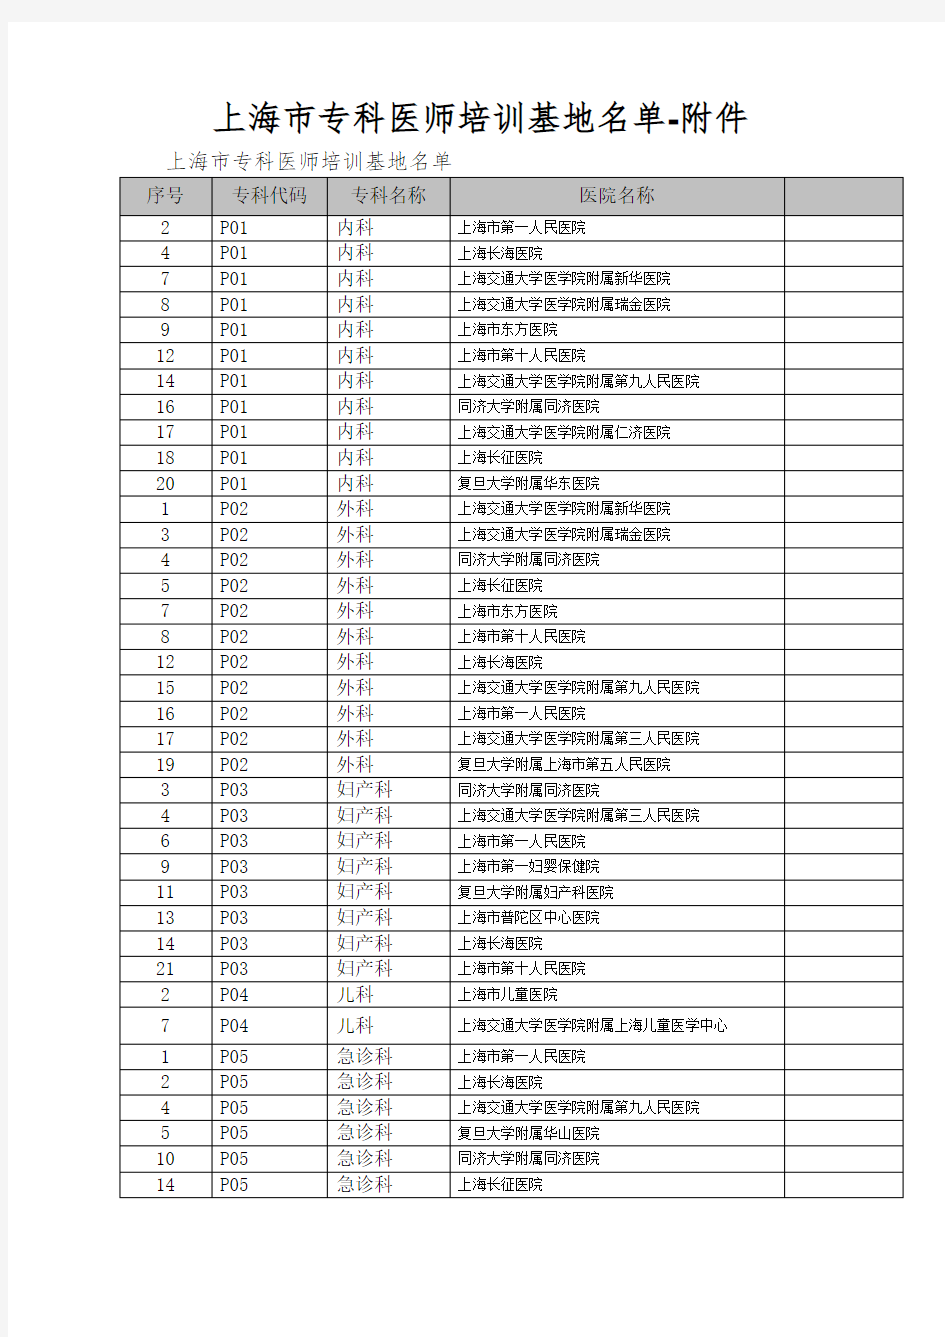 上海市专科医师培训基地名单-附件